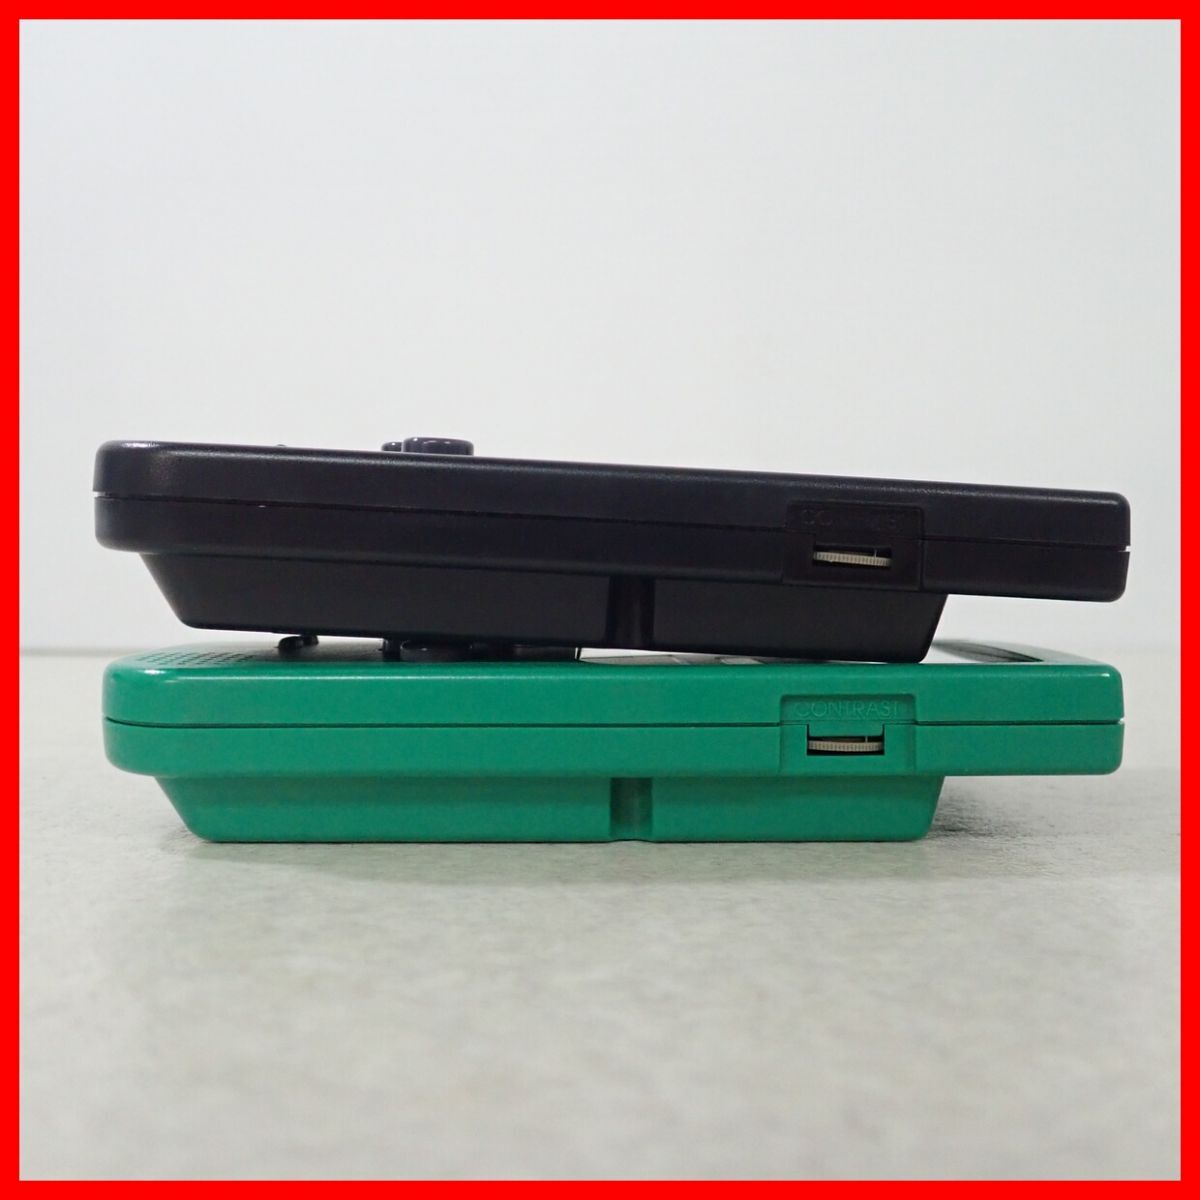 GBP Game Boy карман корпус MGB-001 зеленый / черный совместно 2 шт. комплект Nintendo nintendo коробка мнение есть с дефектом товар [10